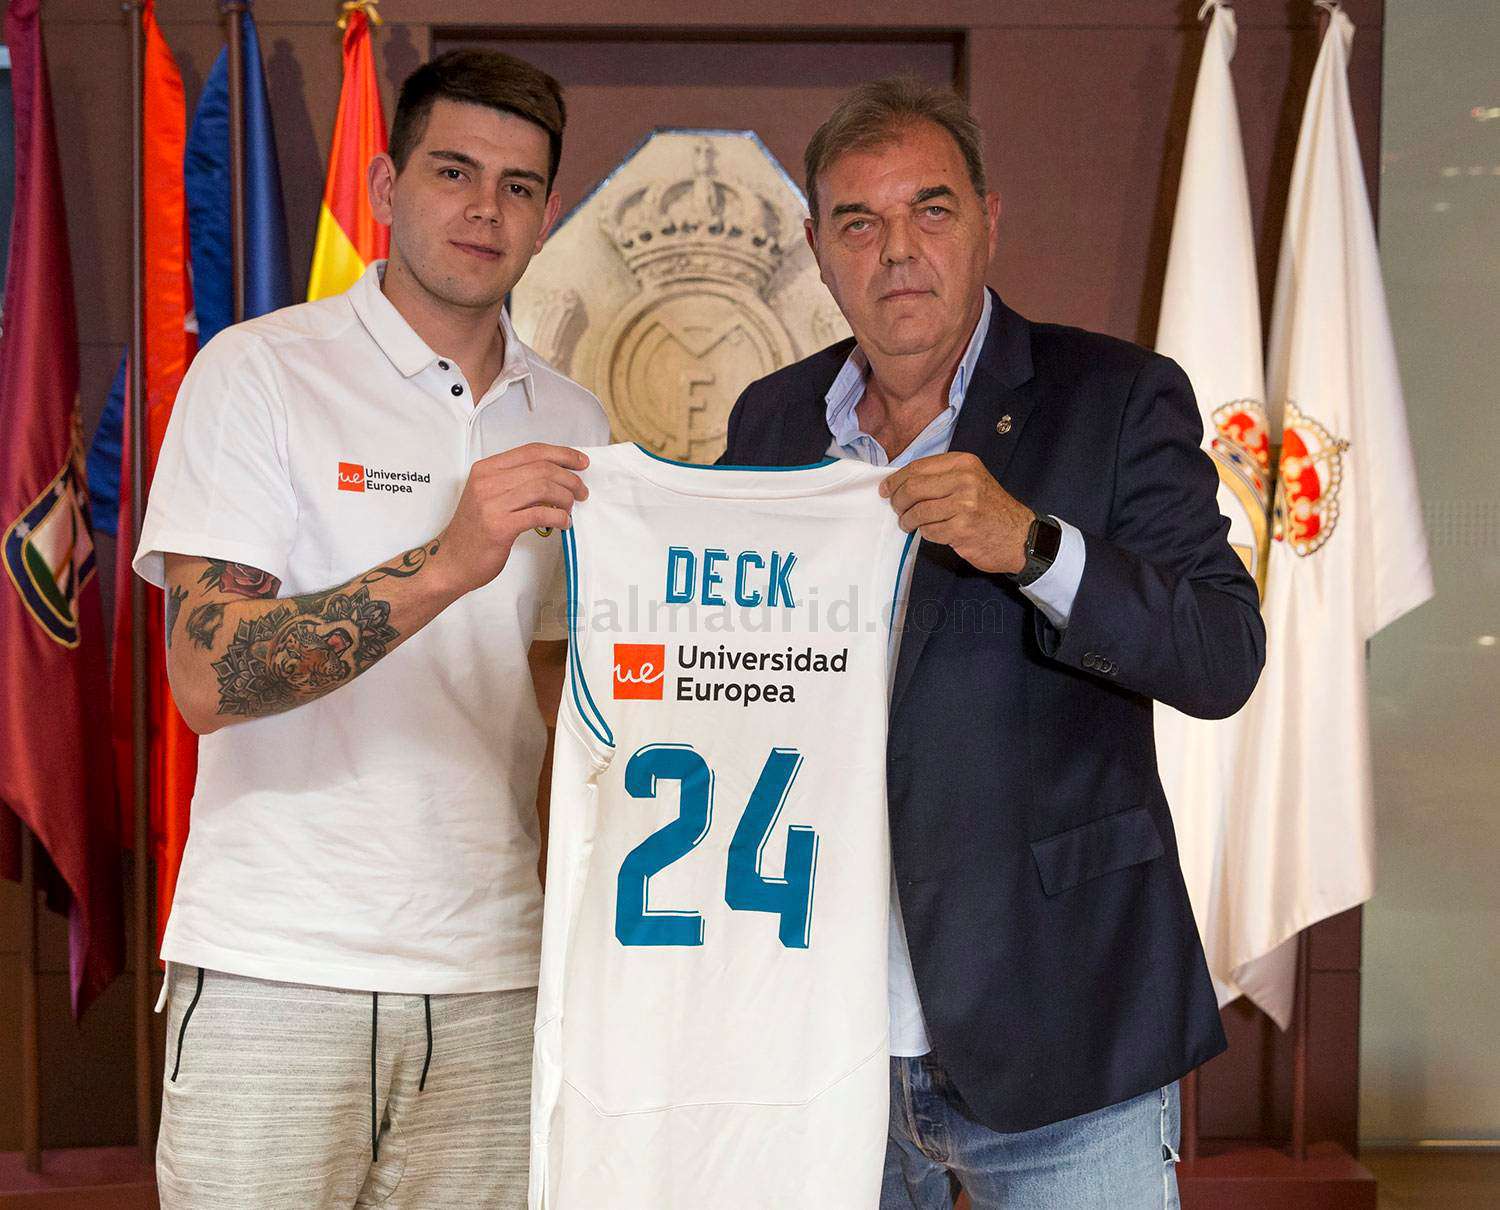 Real Madrid anunció la firma de contrato de Deck